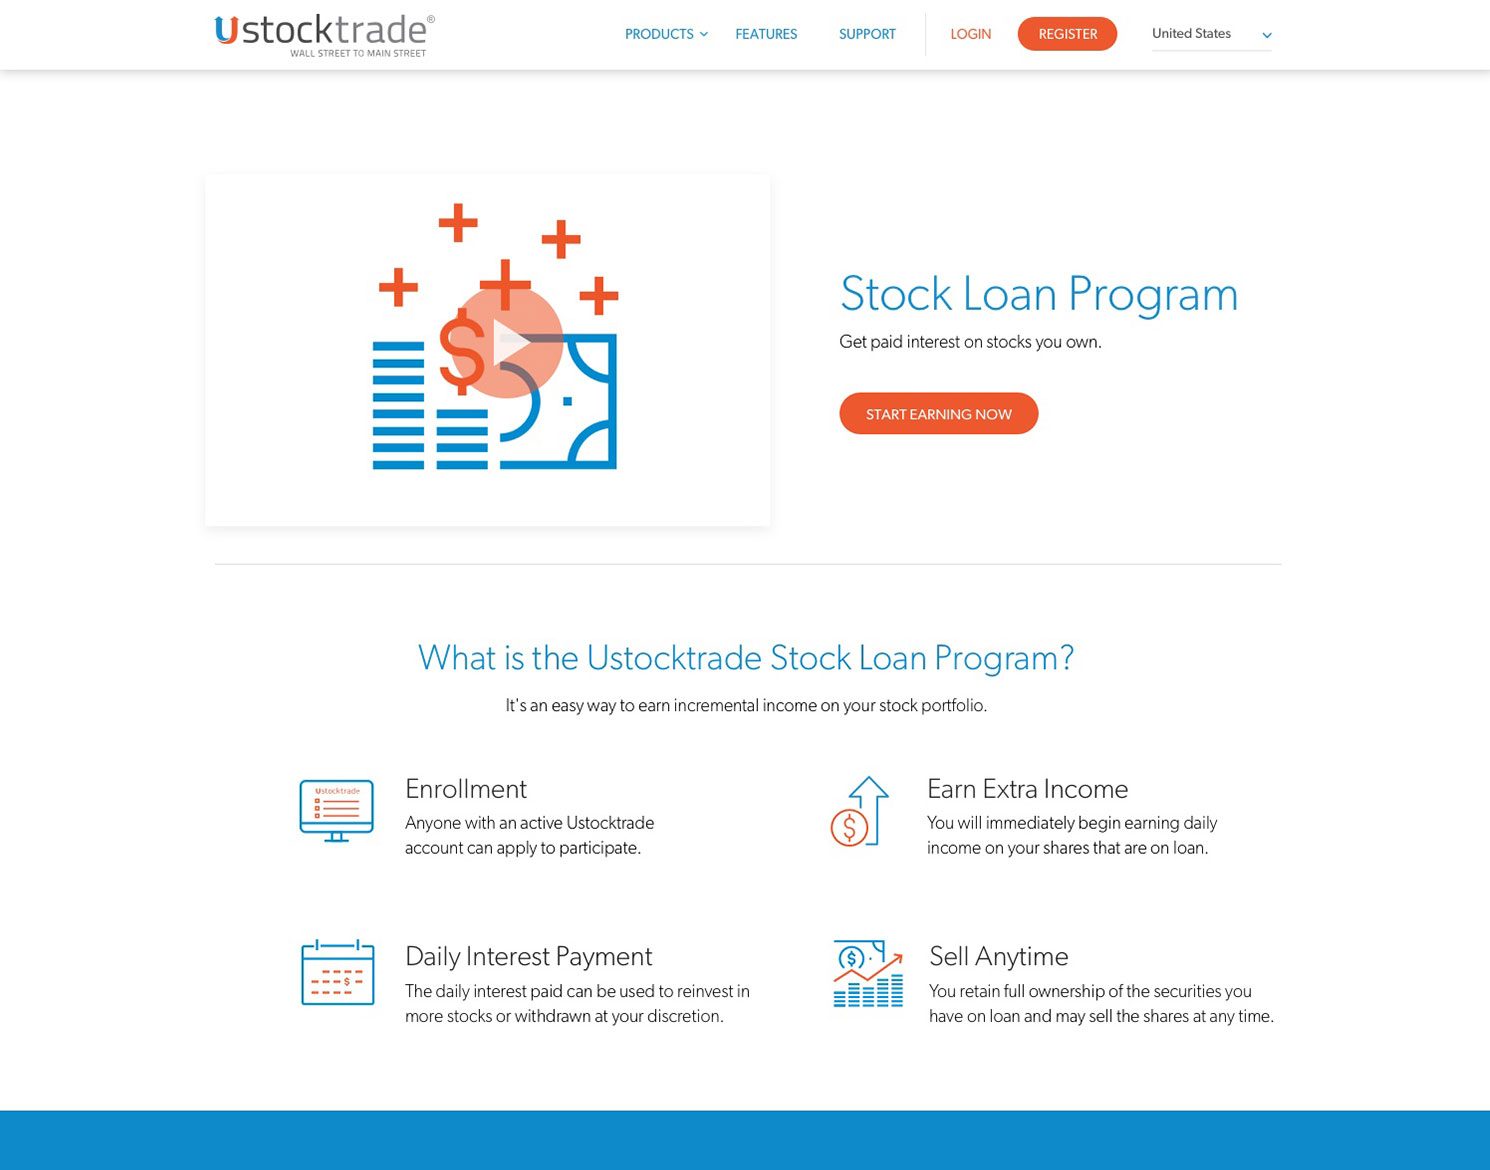 UST US Website - Stock Loan Program